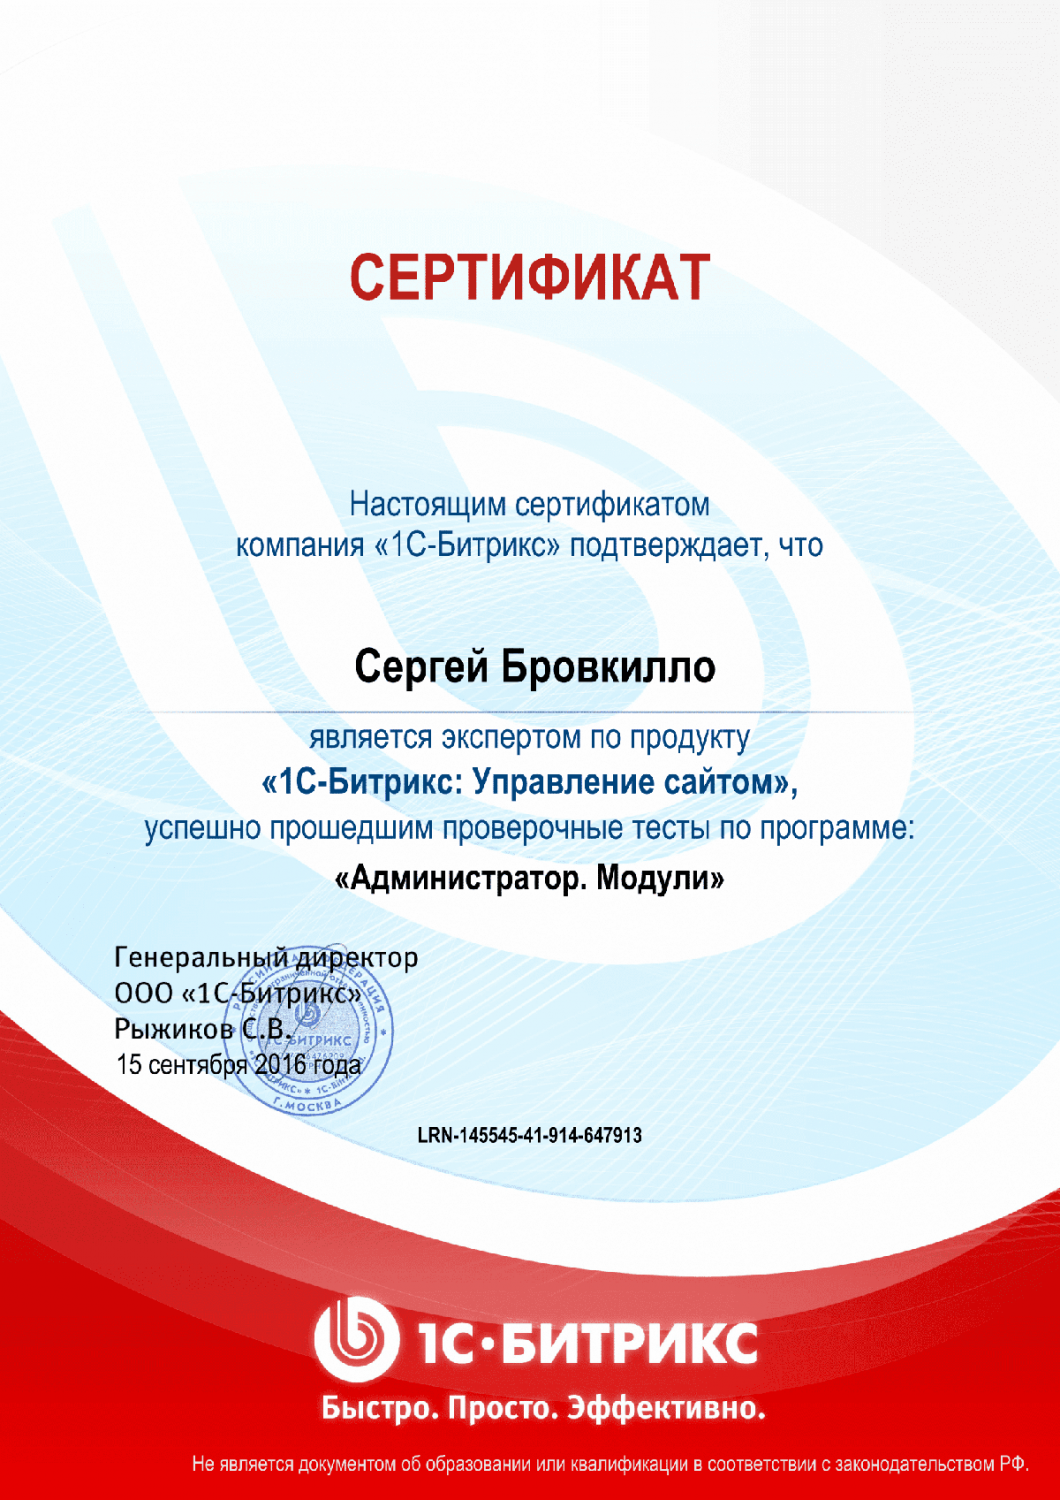 Сертификат эксперта по программе "Администратор. Модули" в Сургута